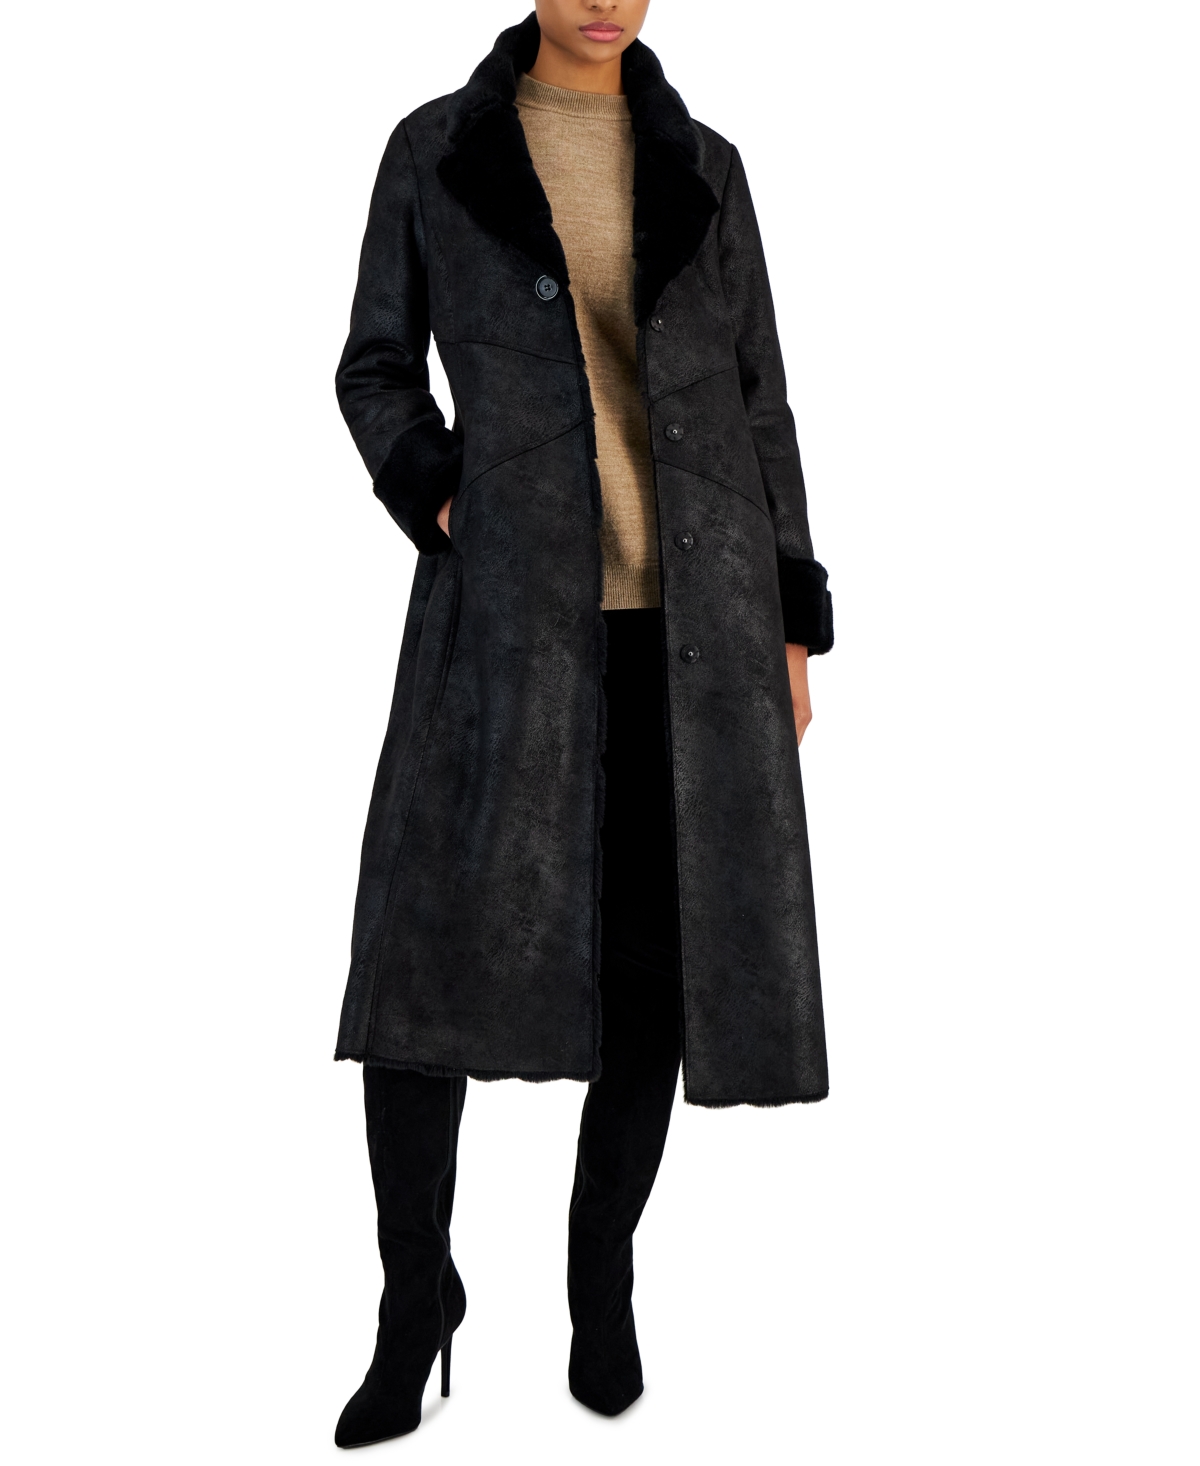 Women's Faux-Suede Faux-Fur-Lined Coat - Black